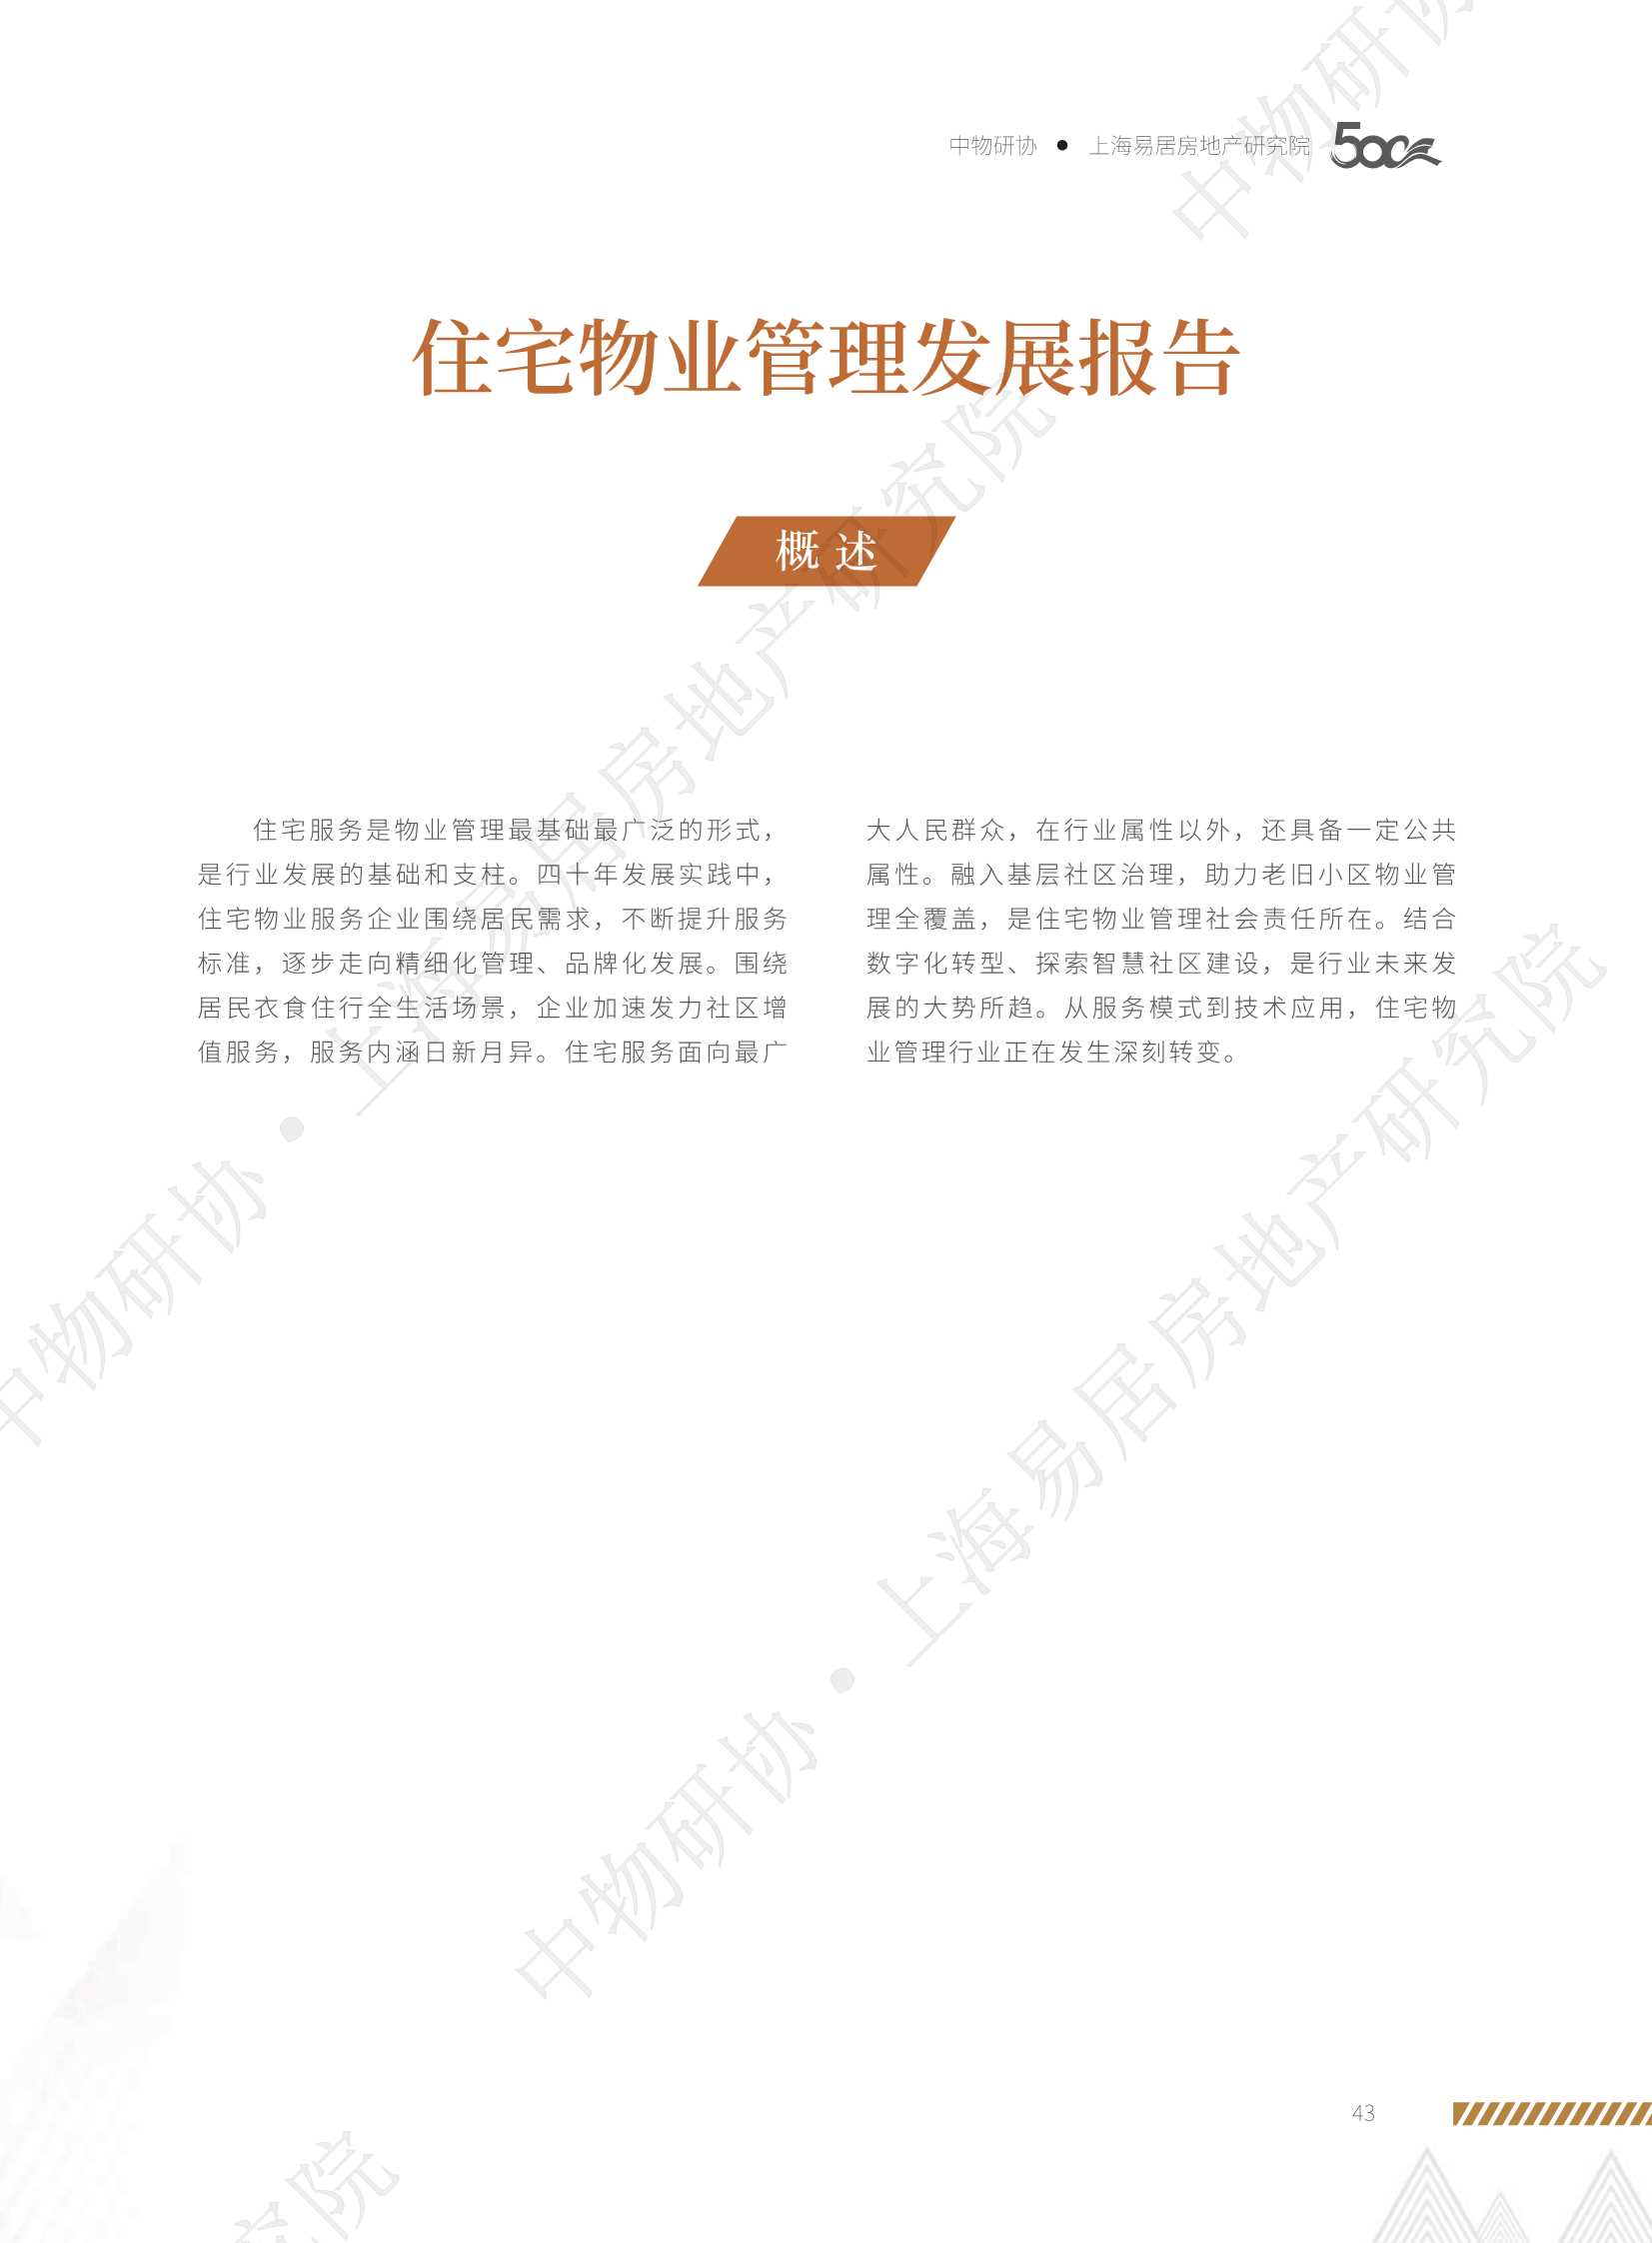 中物研协&上海易居房地产研究院-2021住宅物业管理发展报告-2021.10-14页